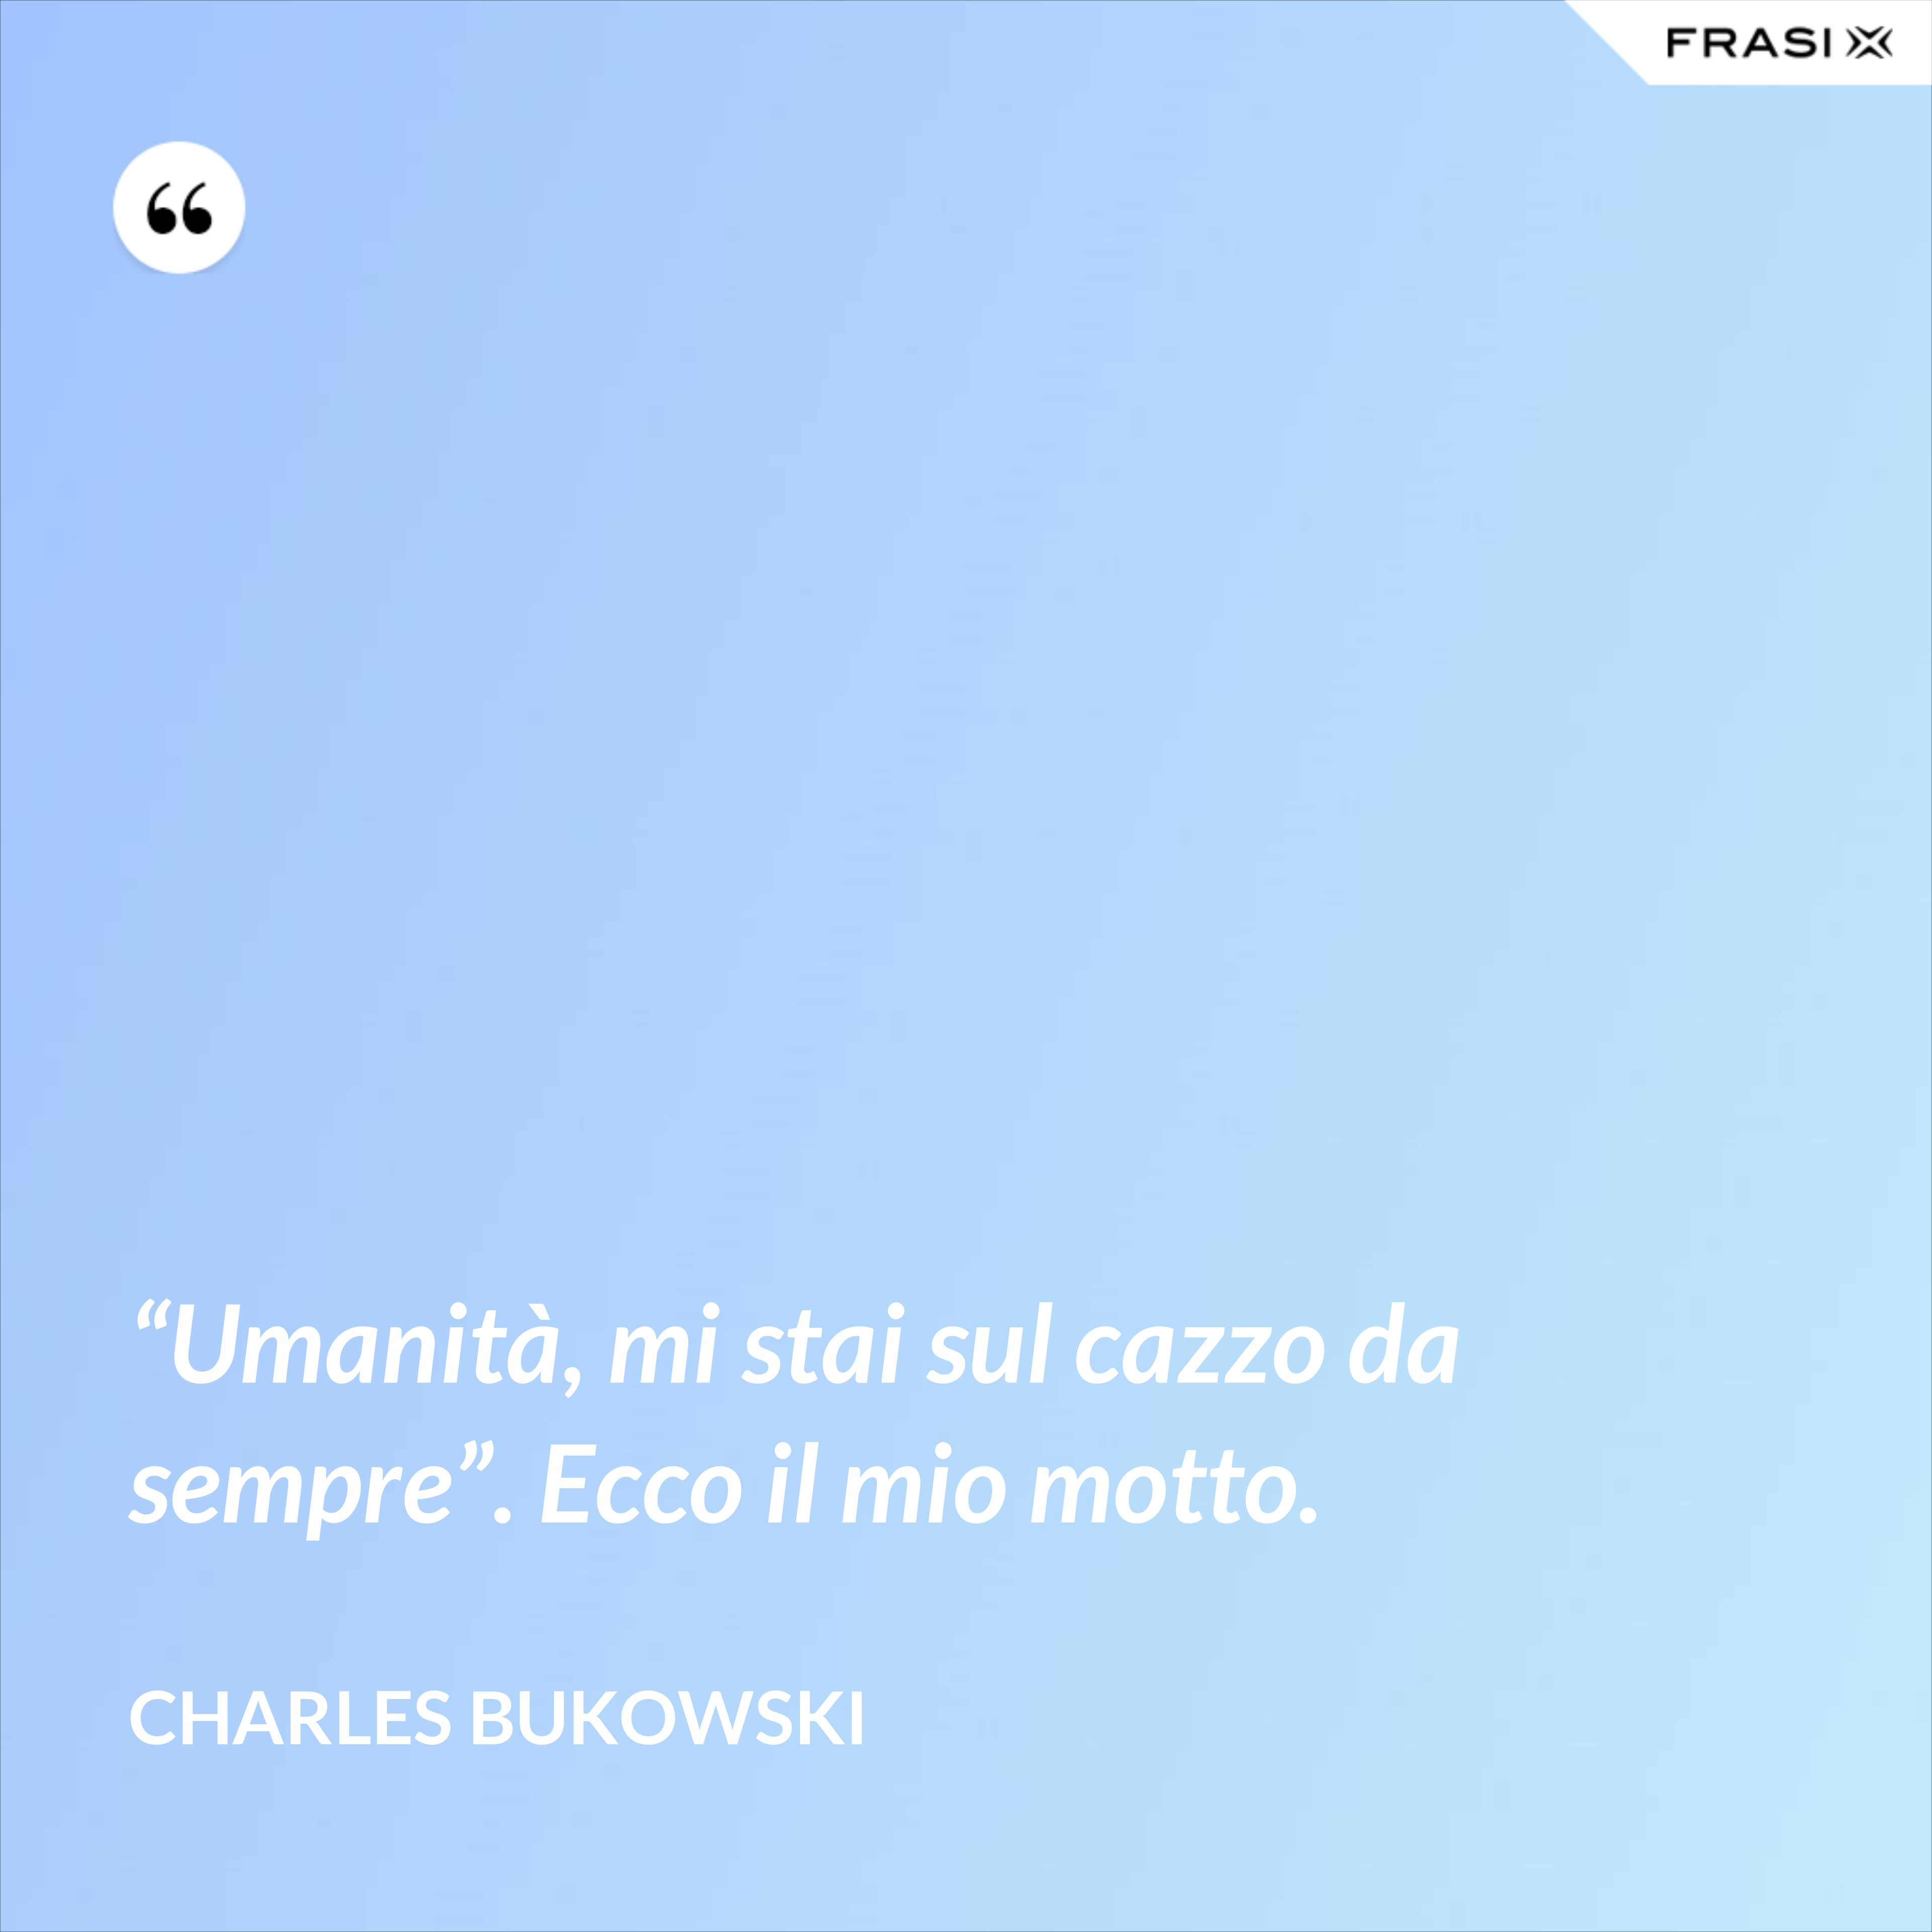 “Umanità, mi stai sul cazzo da sempre”. Ecco il mio motto. - Charles Bukowski